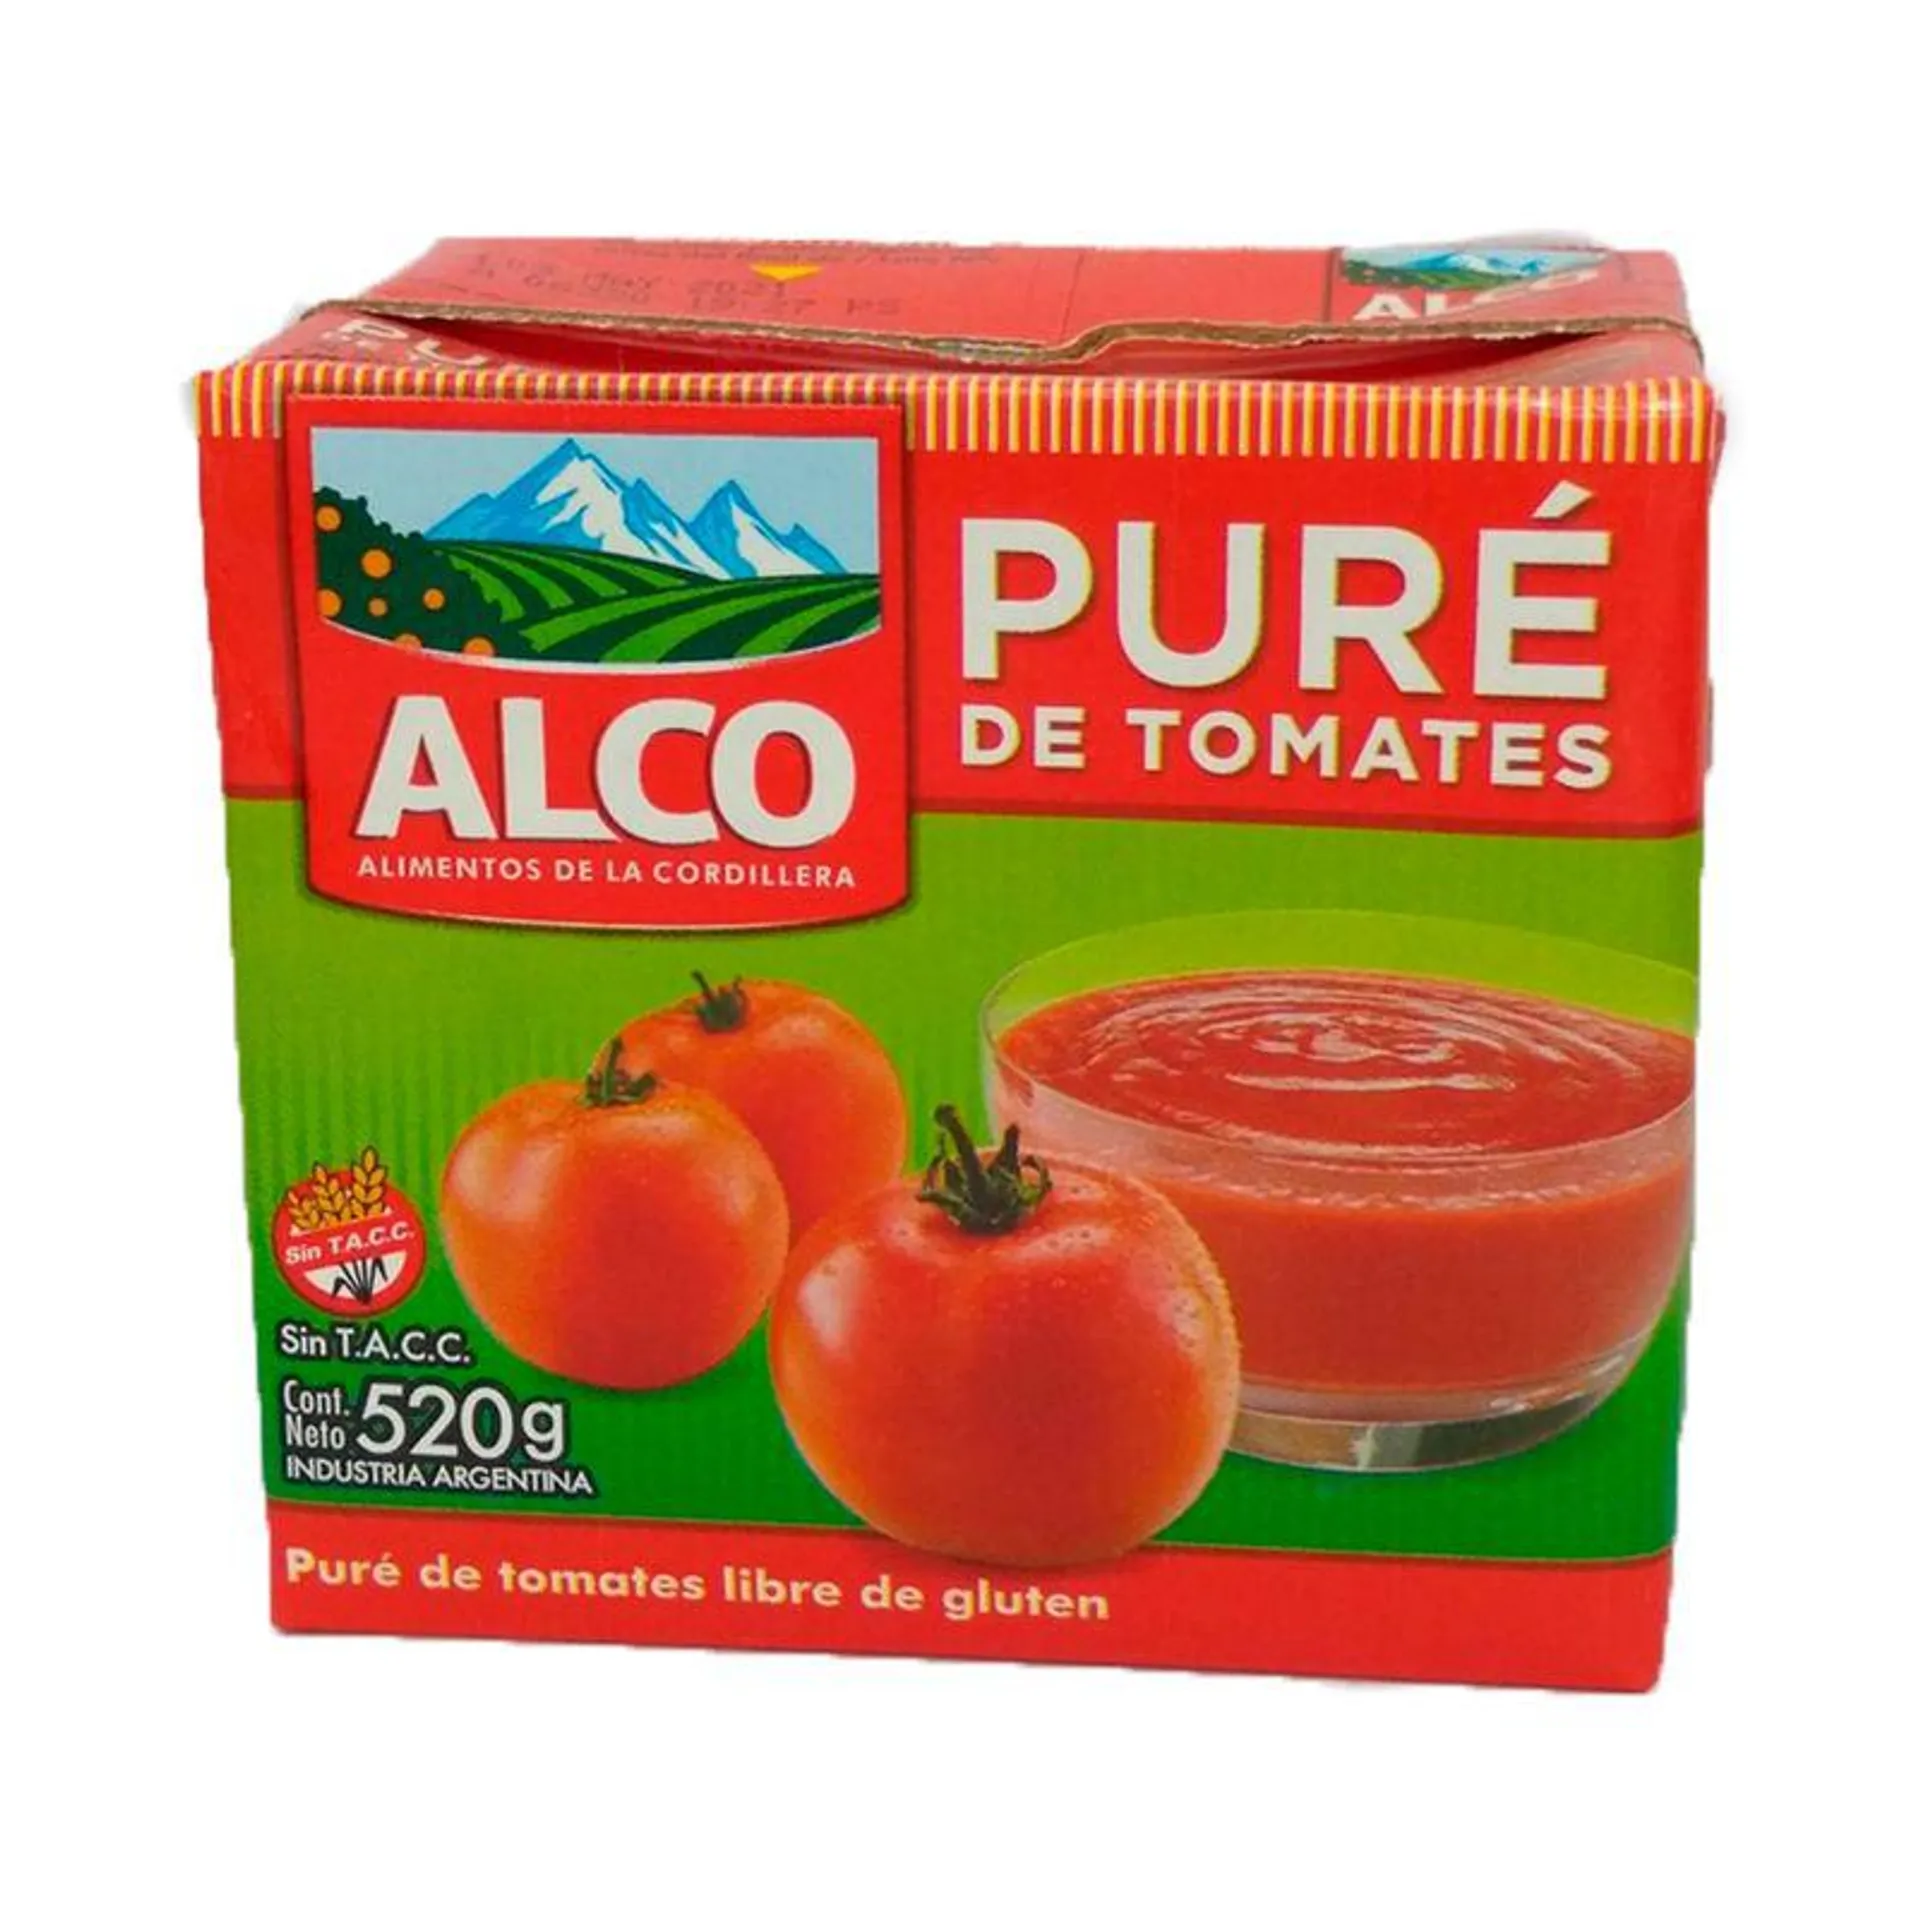 Pure de tomates Alco 520 g.